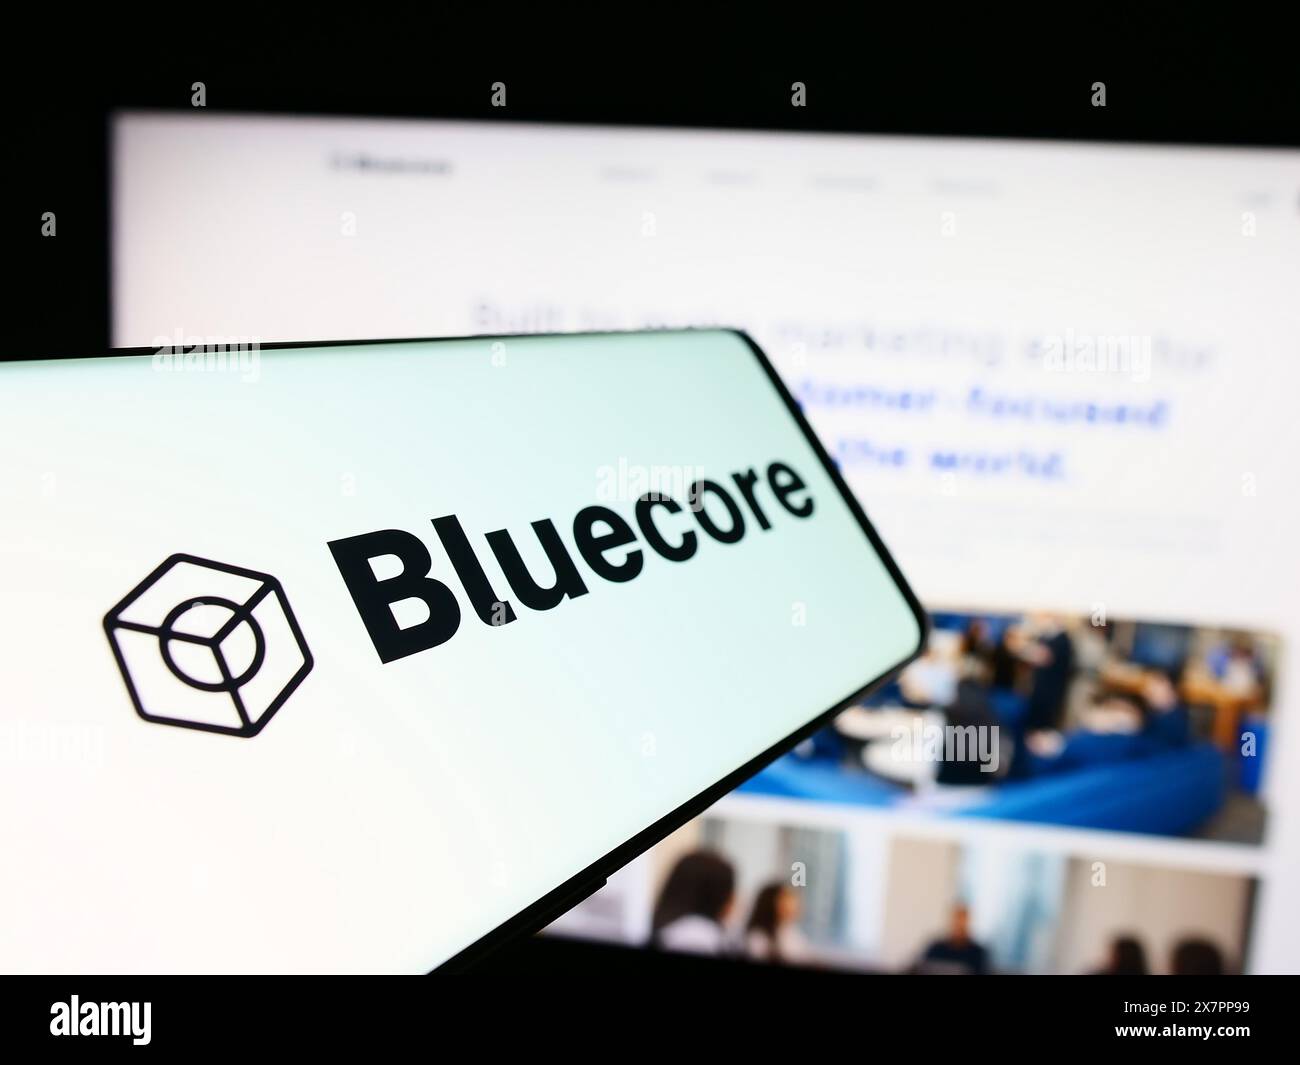 Telefono cellulare con logo della società americana di tecnologia di marketing Bluecore Inc. Di fronte al sito Web aziendale. Mettere a fuoco la parte sinistra del display del telefono. Foto Stock